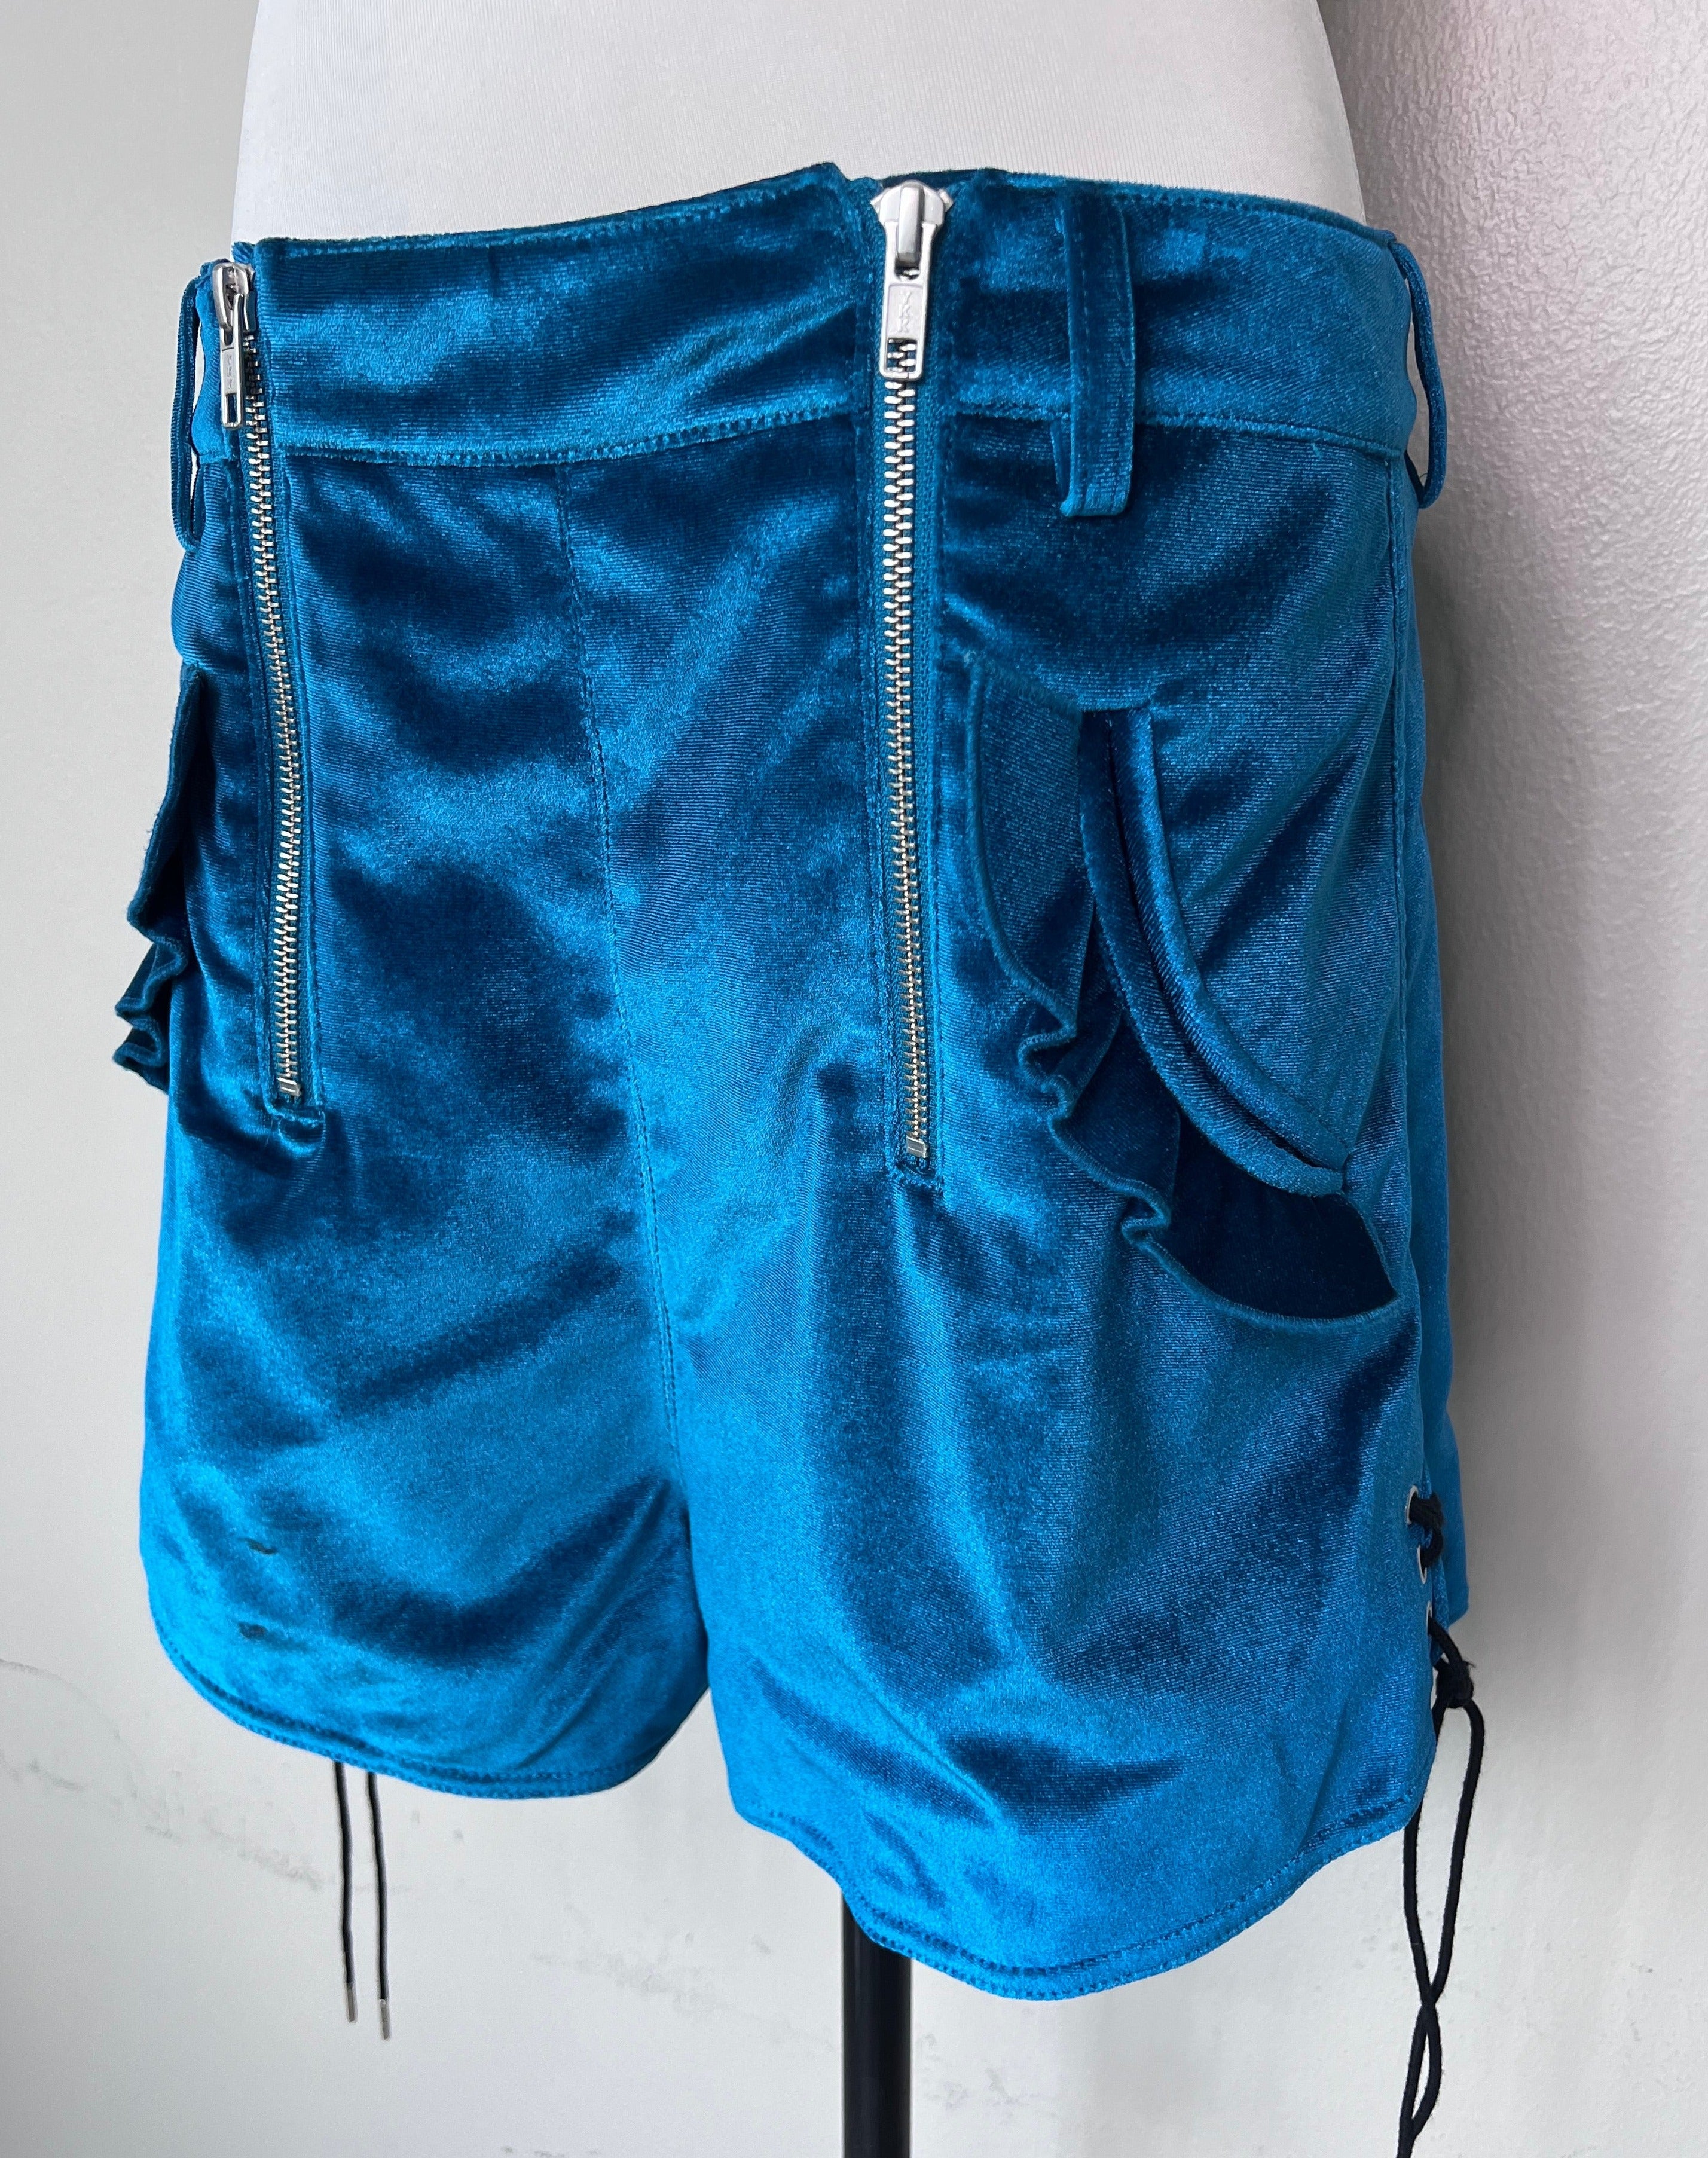 Blue velvet unique front zipper design mini shorts - SELF-PORTRAIT